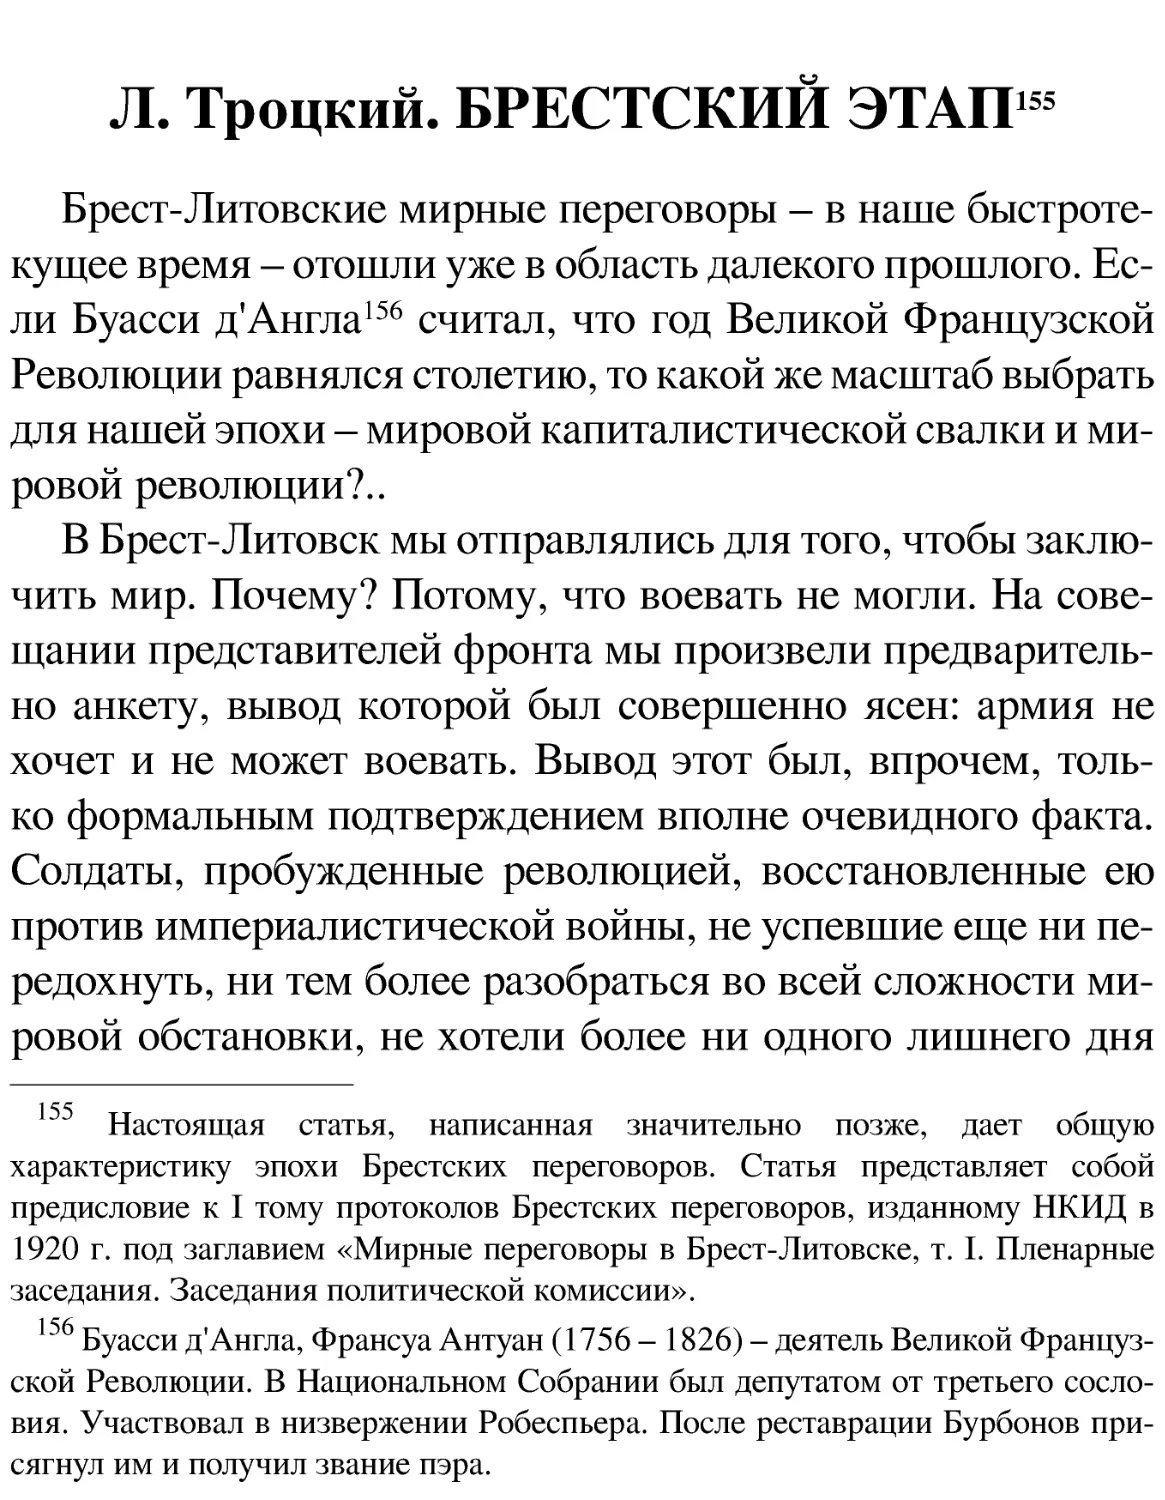 Л. Троцкий. БРЕСТСКИЙ ЭТАП[155]